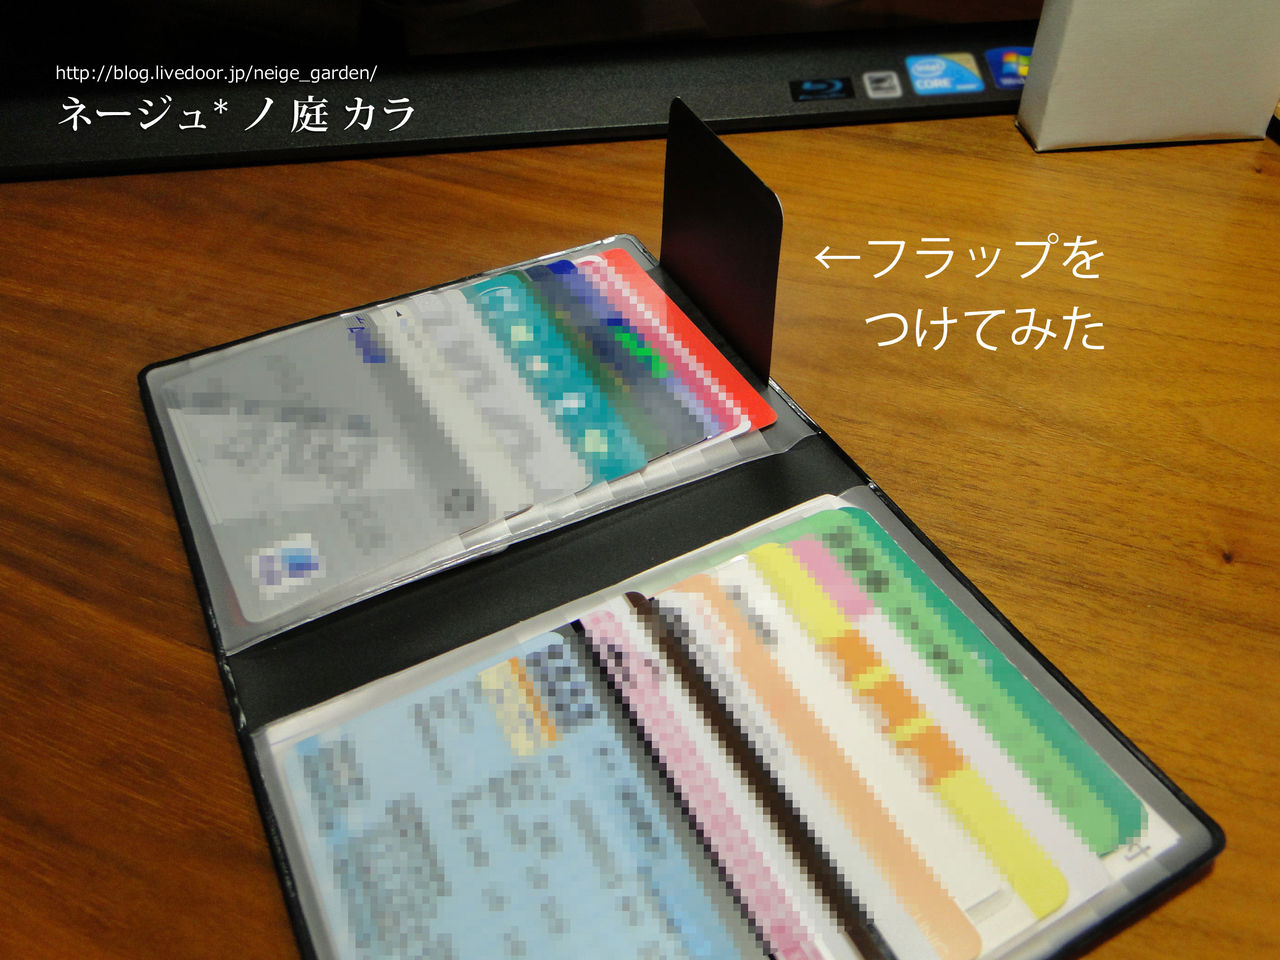 セリア カードケースに手作りフラップでカードの落下防止 Neigeノ庭カラ